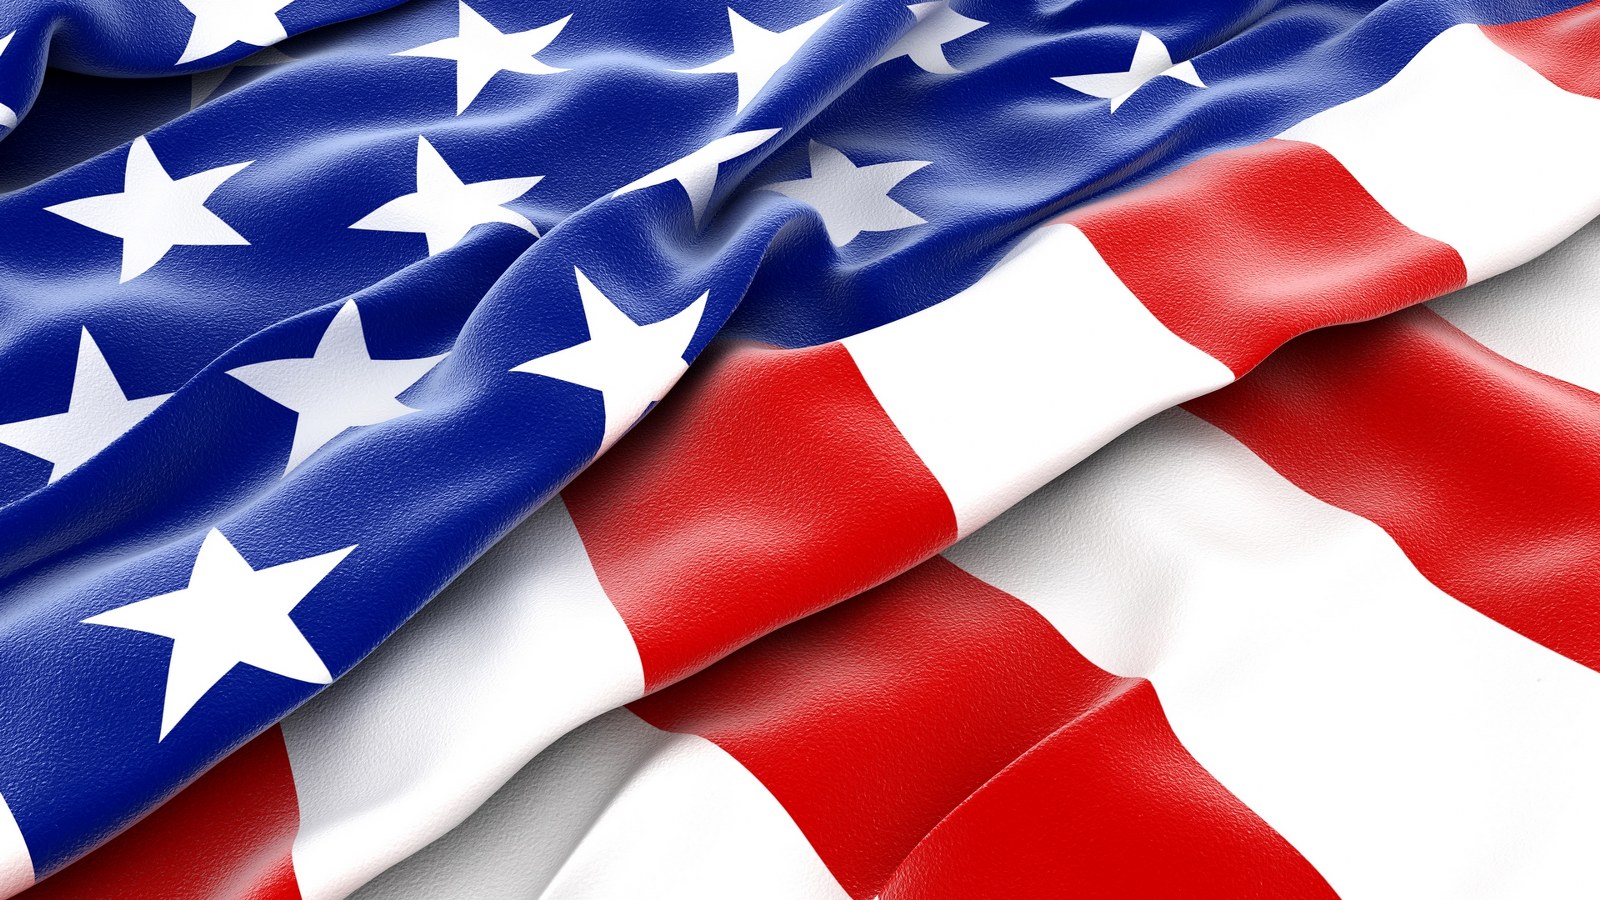 Скачать обои бесплатно Флаги, Крупный План, Сделано Человеком, Американский Флаг картинка на рабочий стол ПК